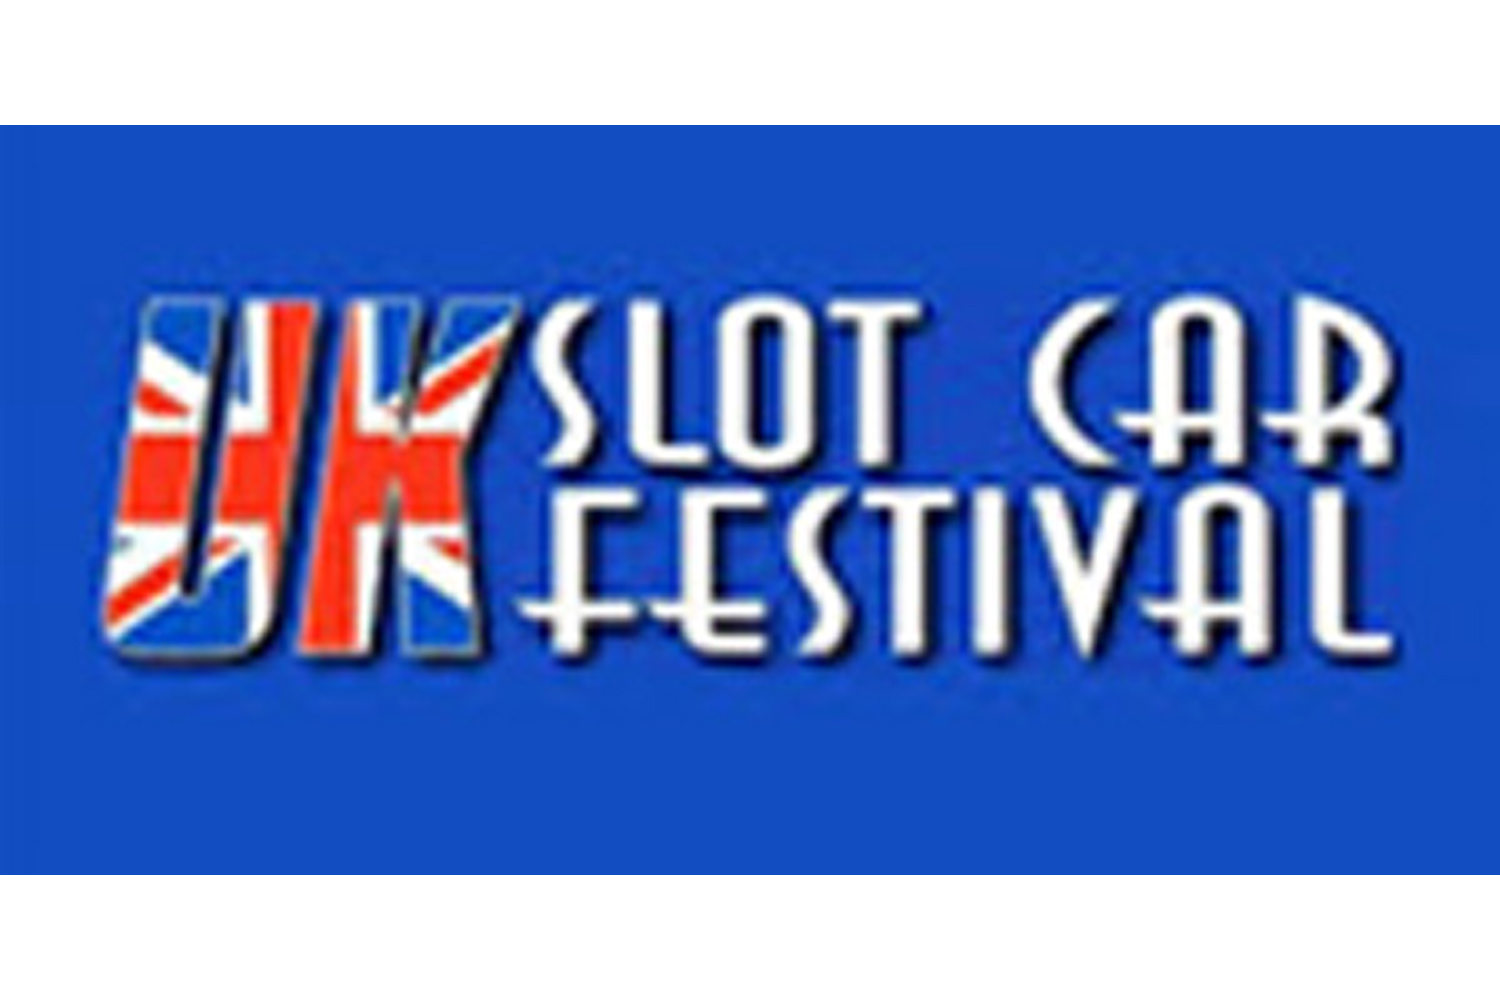 The UK Slot Car Festival